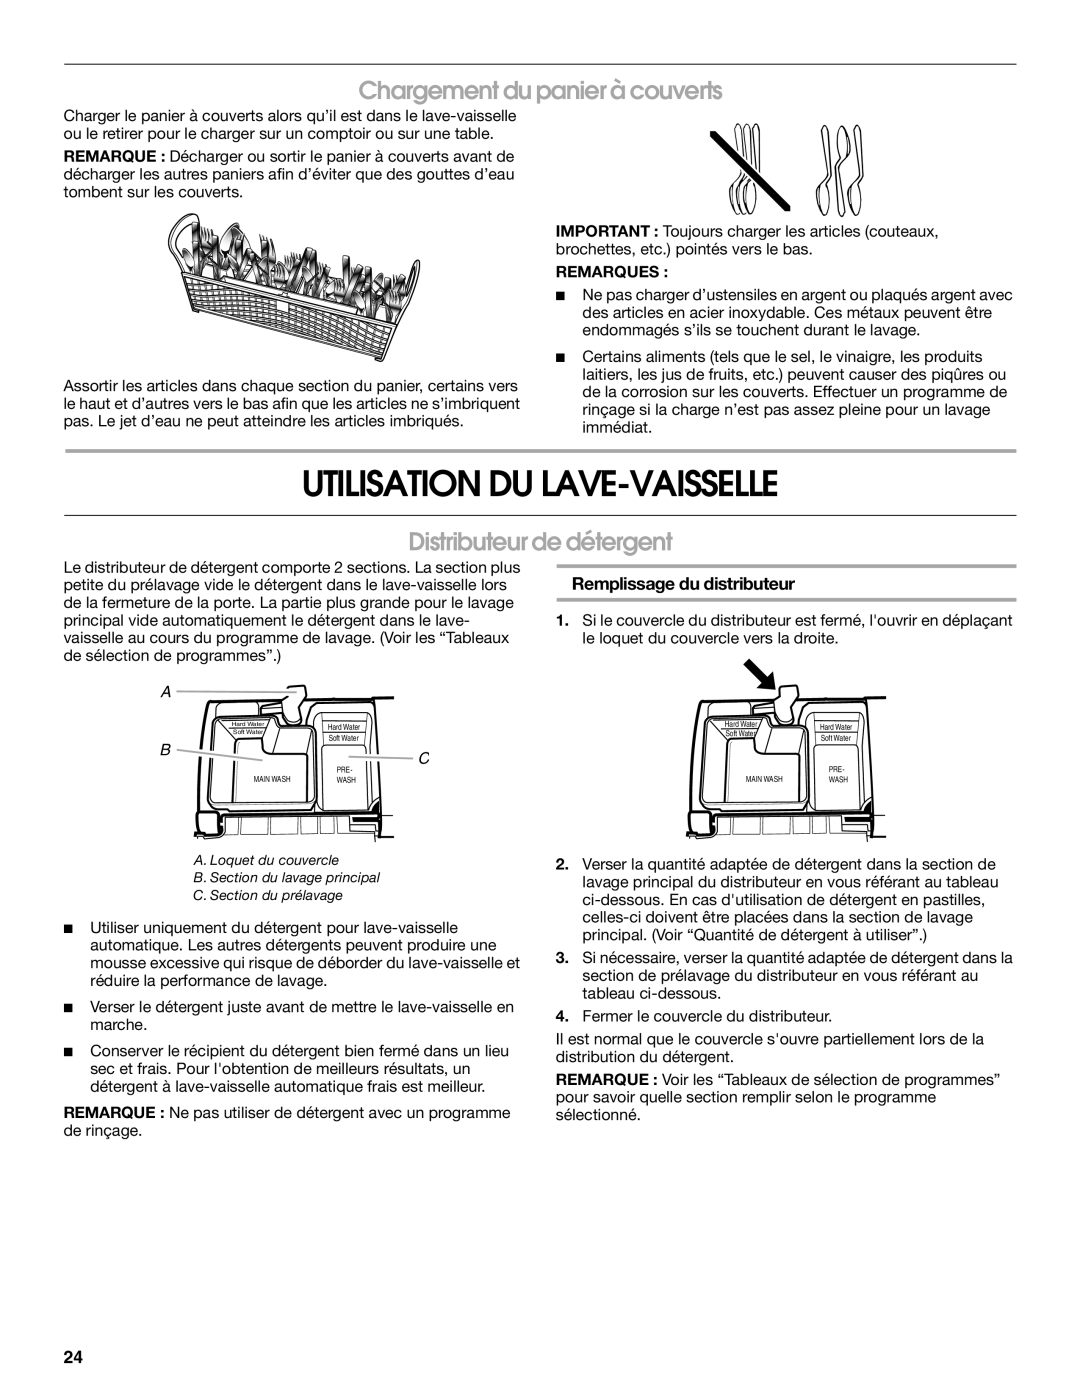 Roper RUD8000S manual Utilisation Du Lave-Vaisselle, Chargement du panier à couverts, Distributeur de détergent, Remarques 